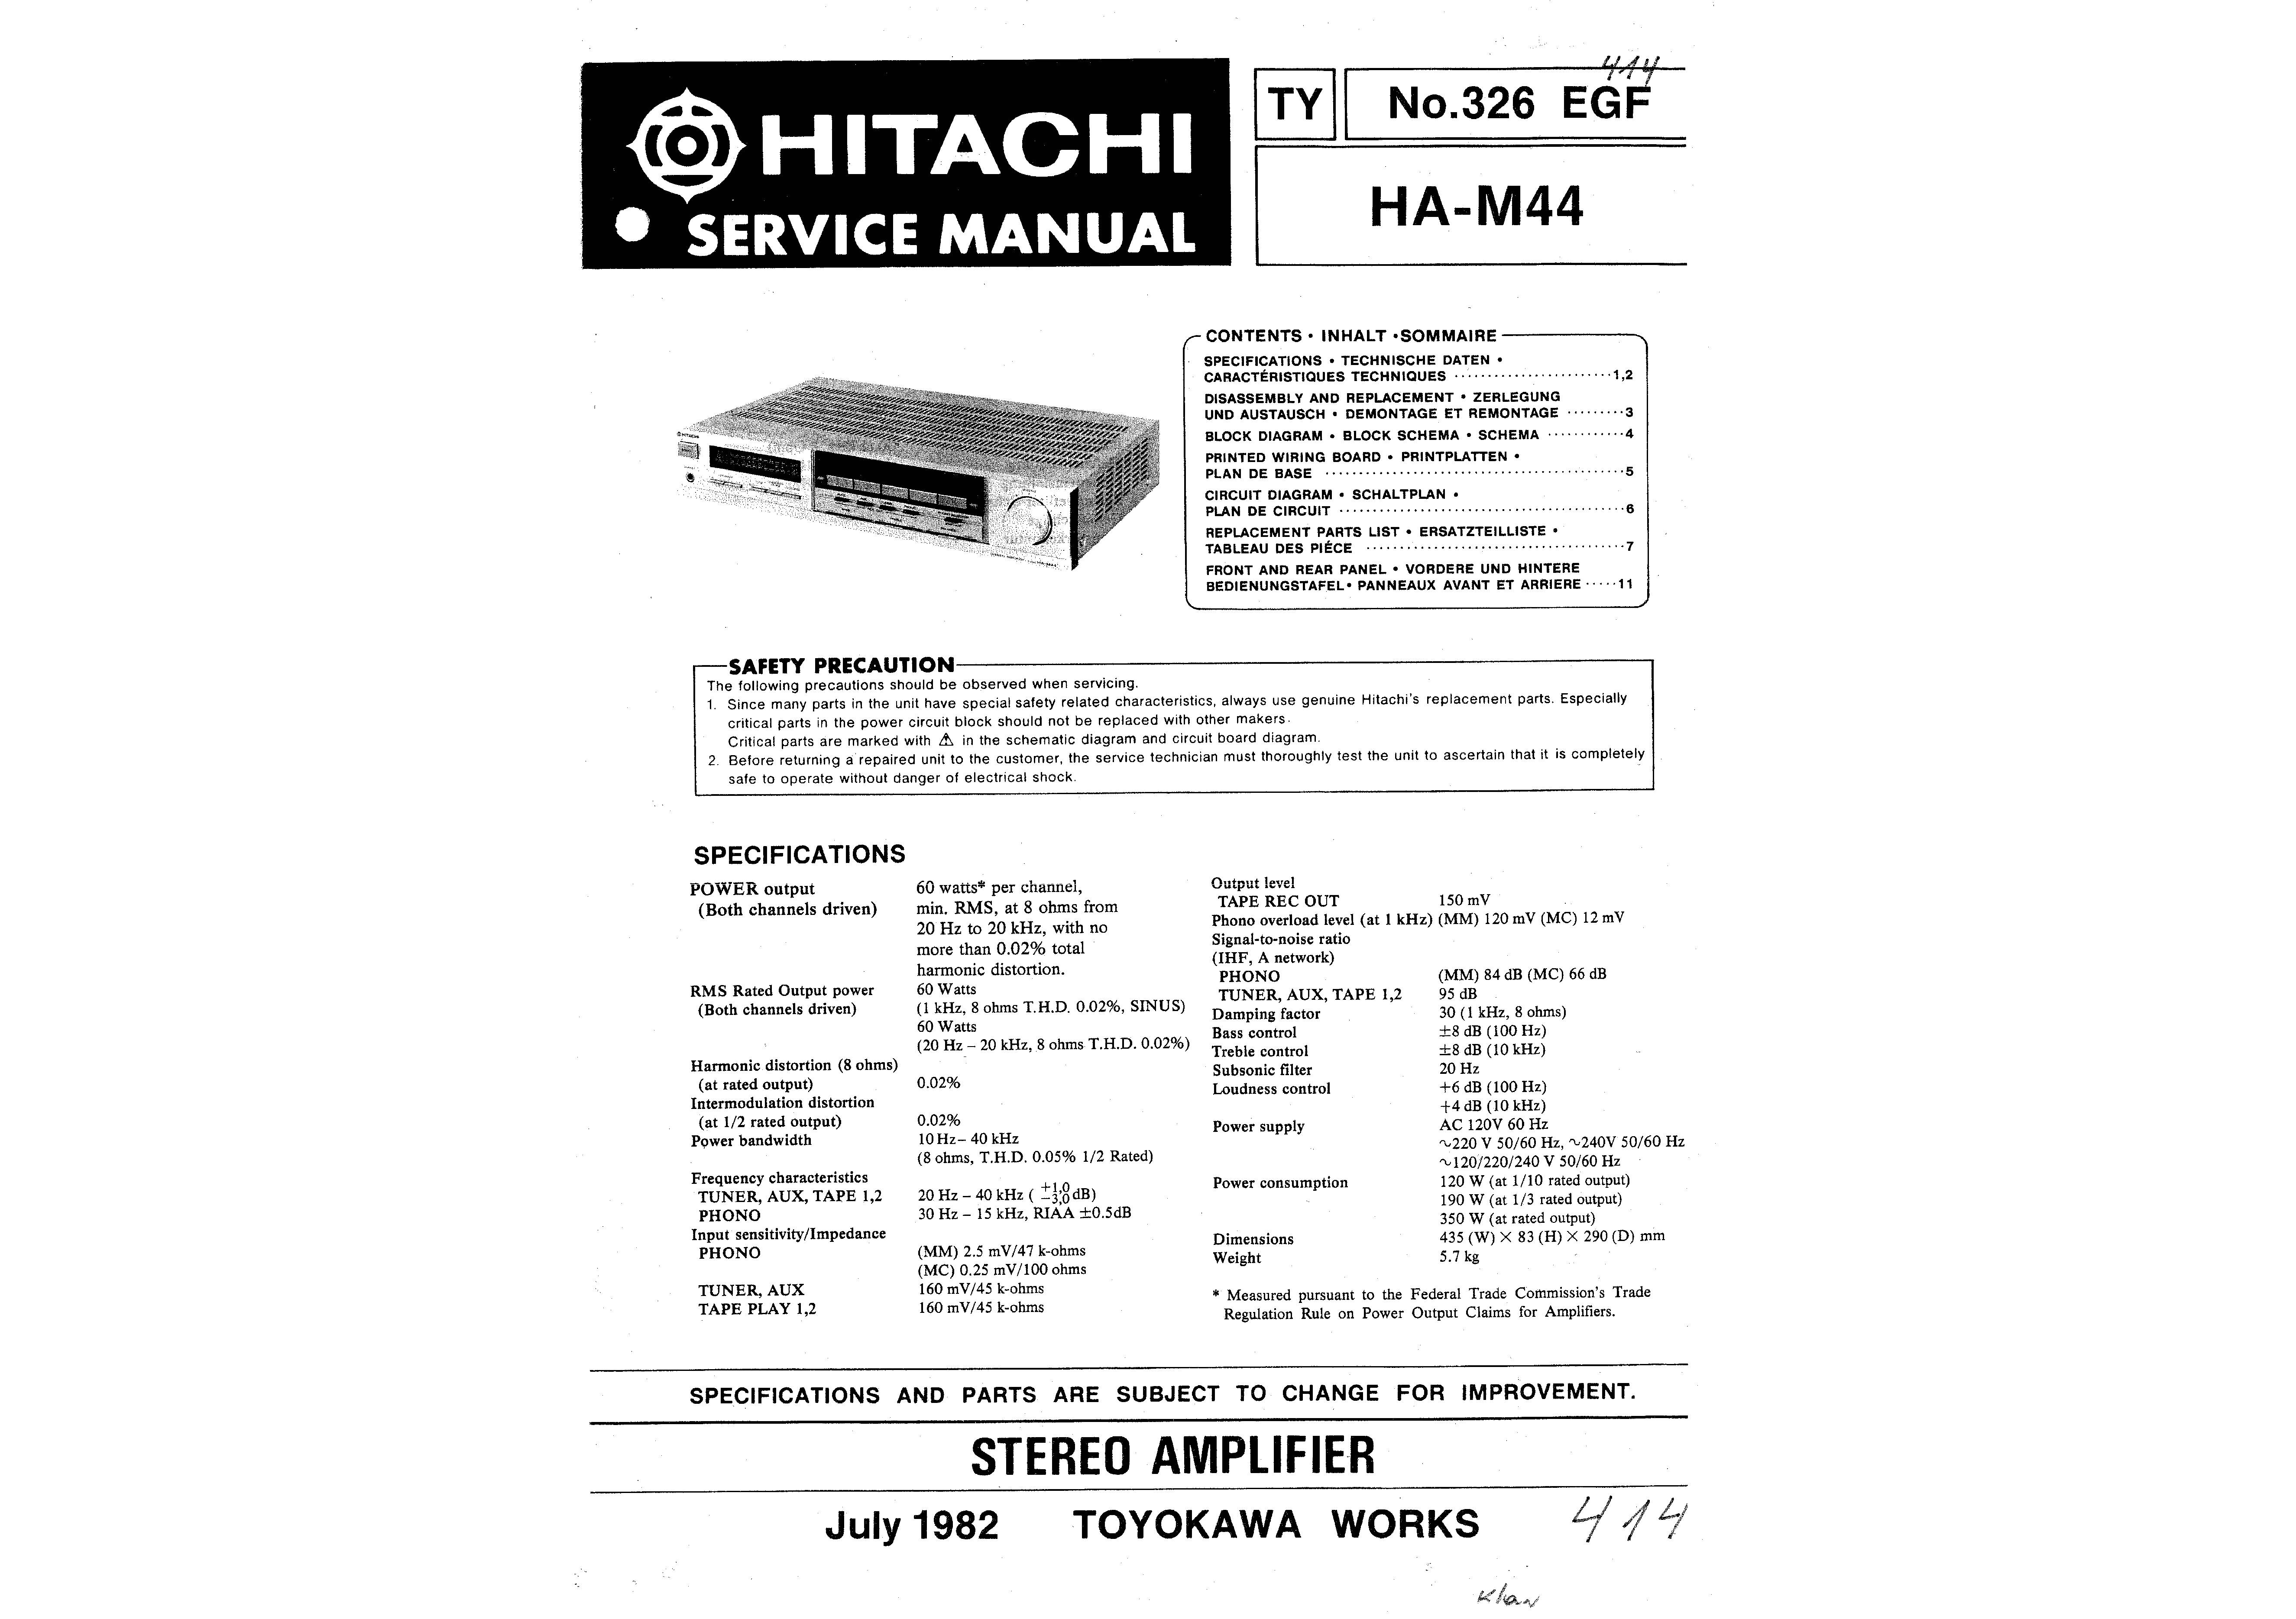 Hitachi HA-M44